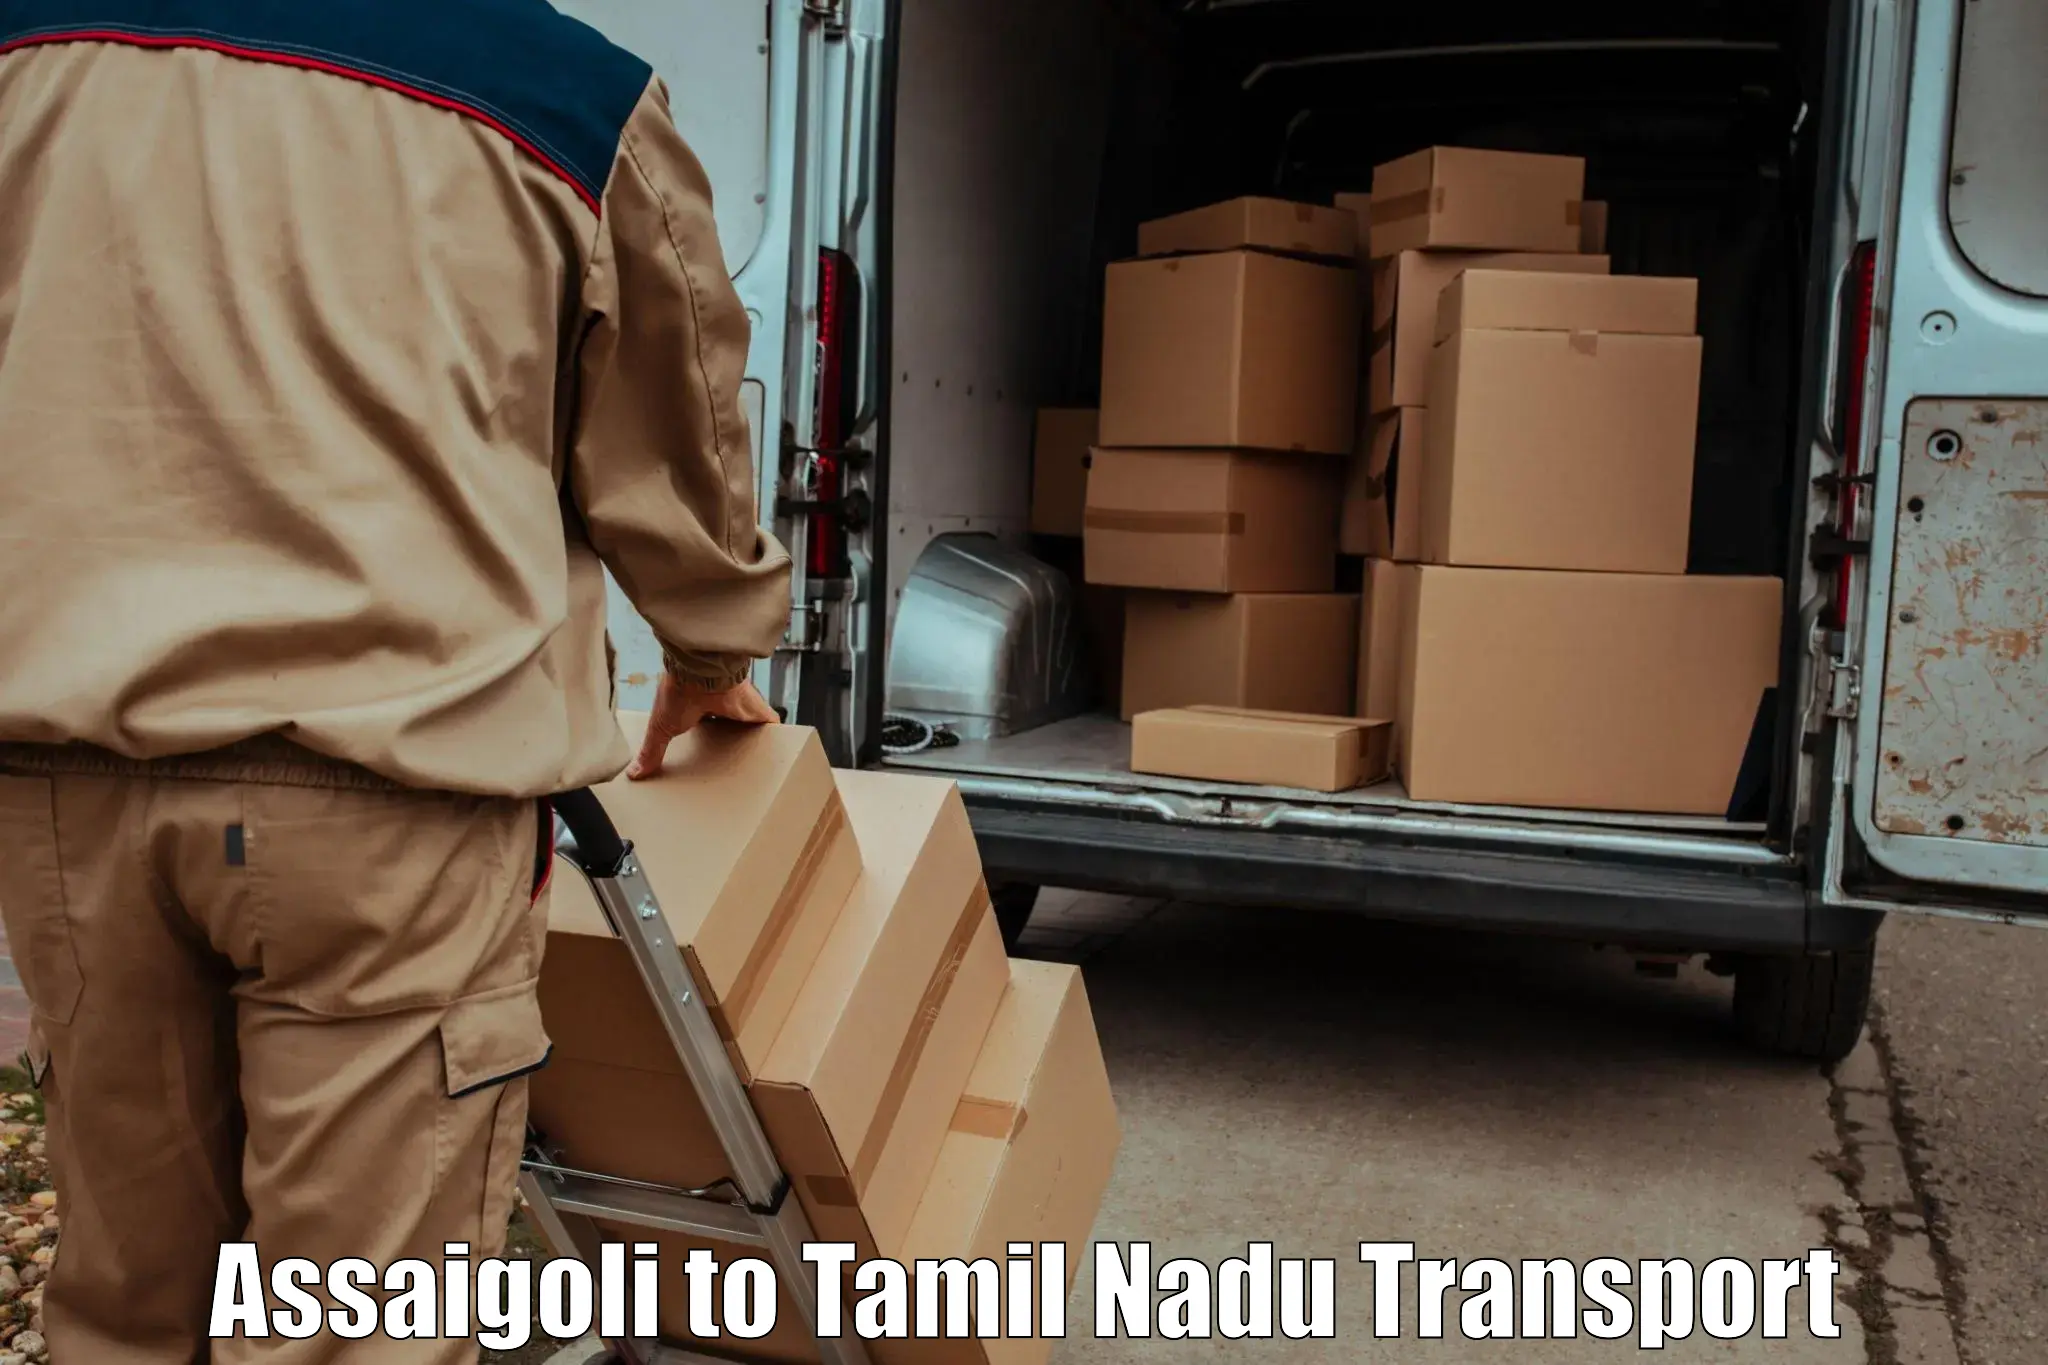 Pick up transport service Assaigoli to Tiruchirappalli